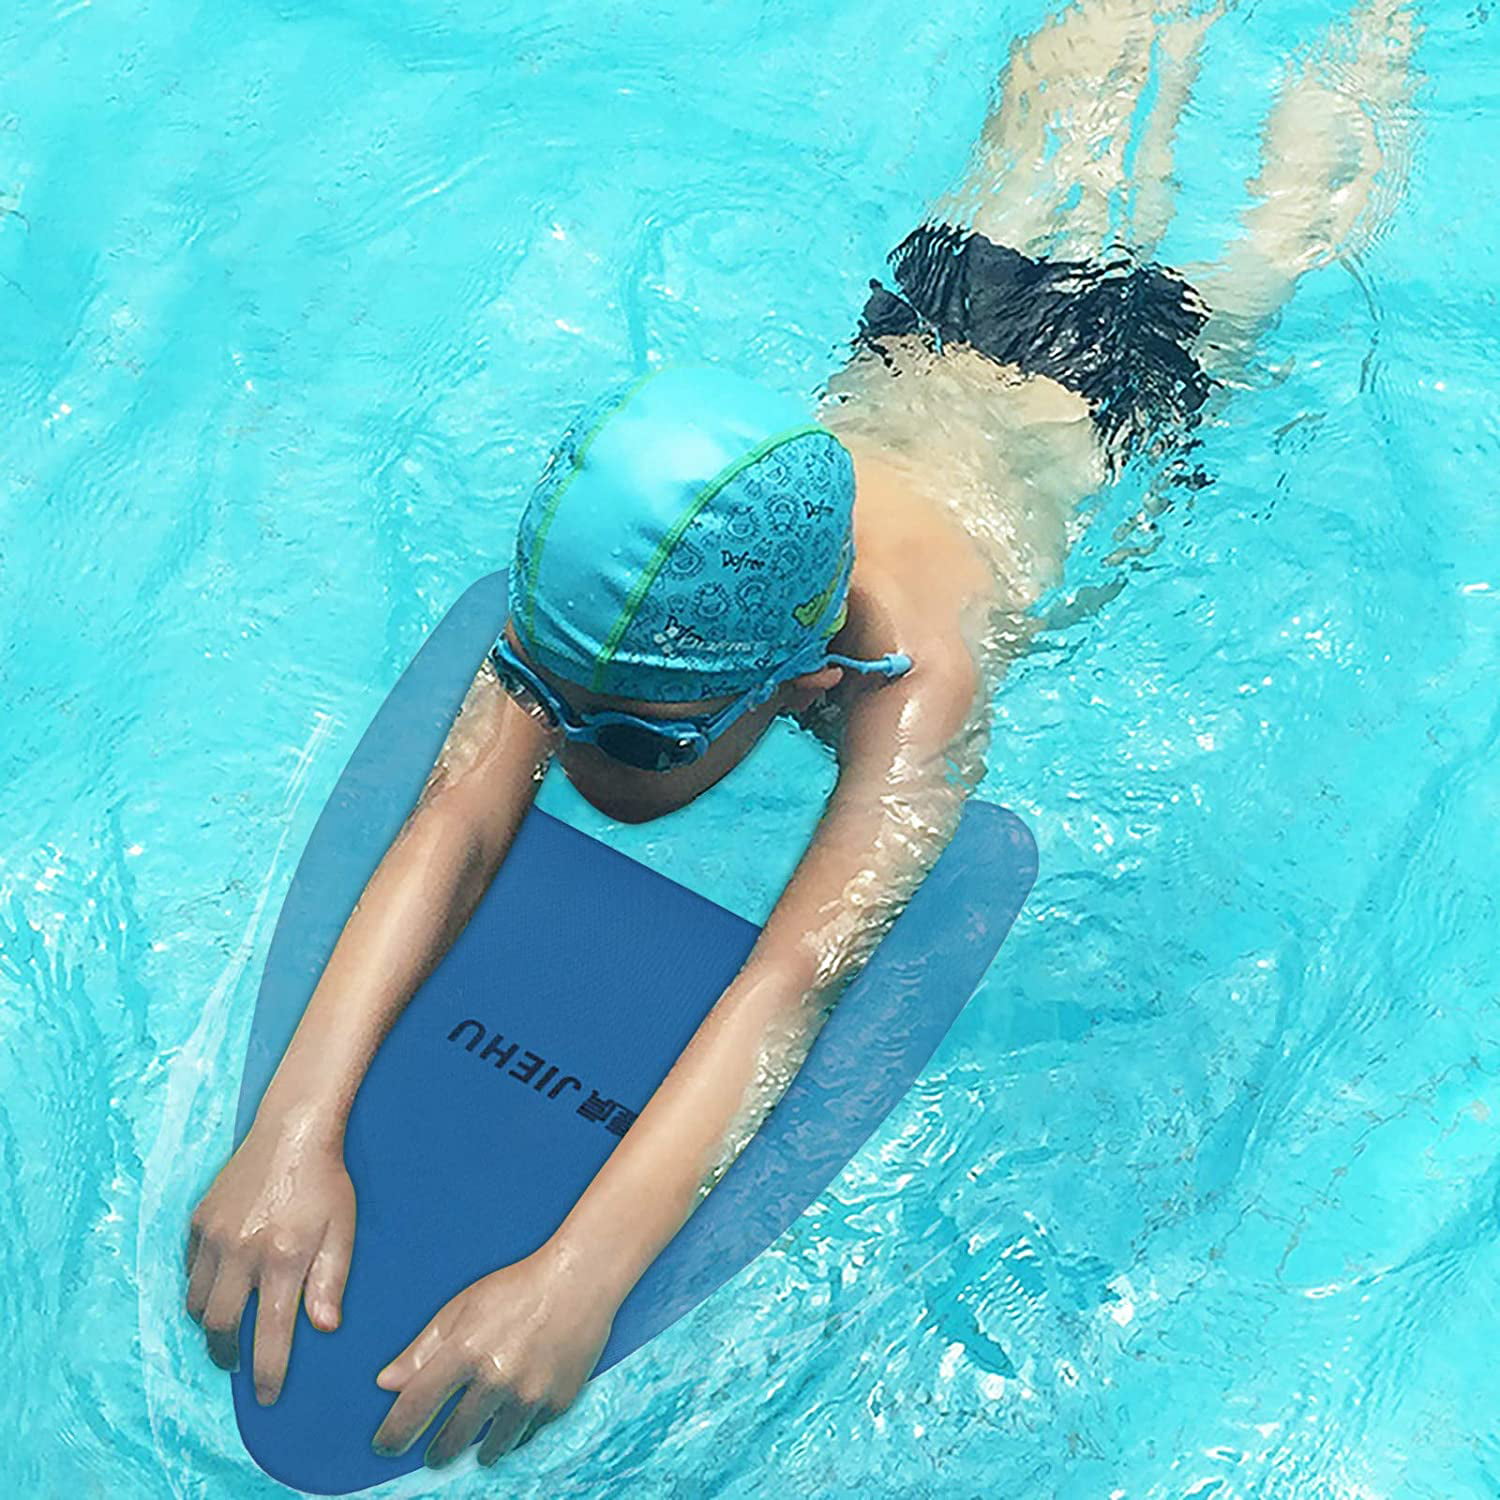 Kickboard Swimming Lightweight Eva Training Aid Float Foam Kickboard Tool in Pool for Kids Adults Beginner Blue Swimming Board 